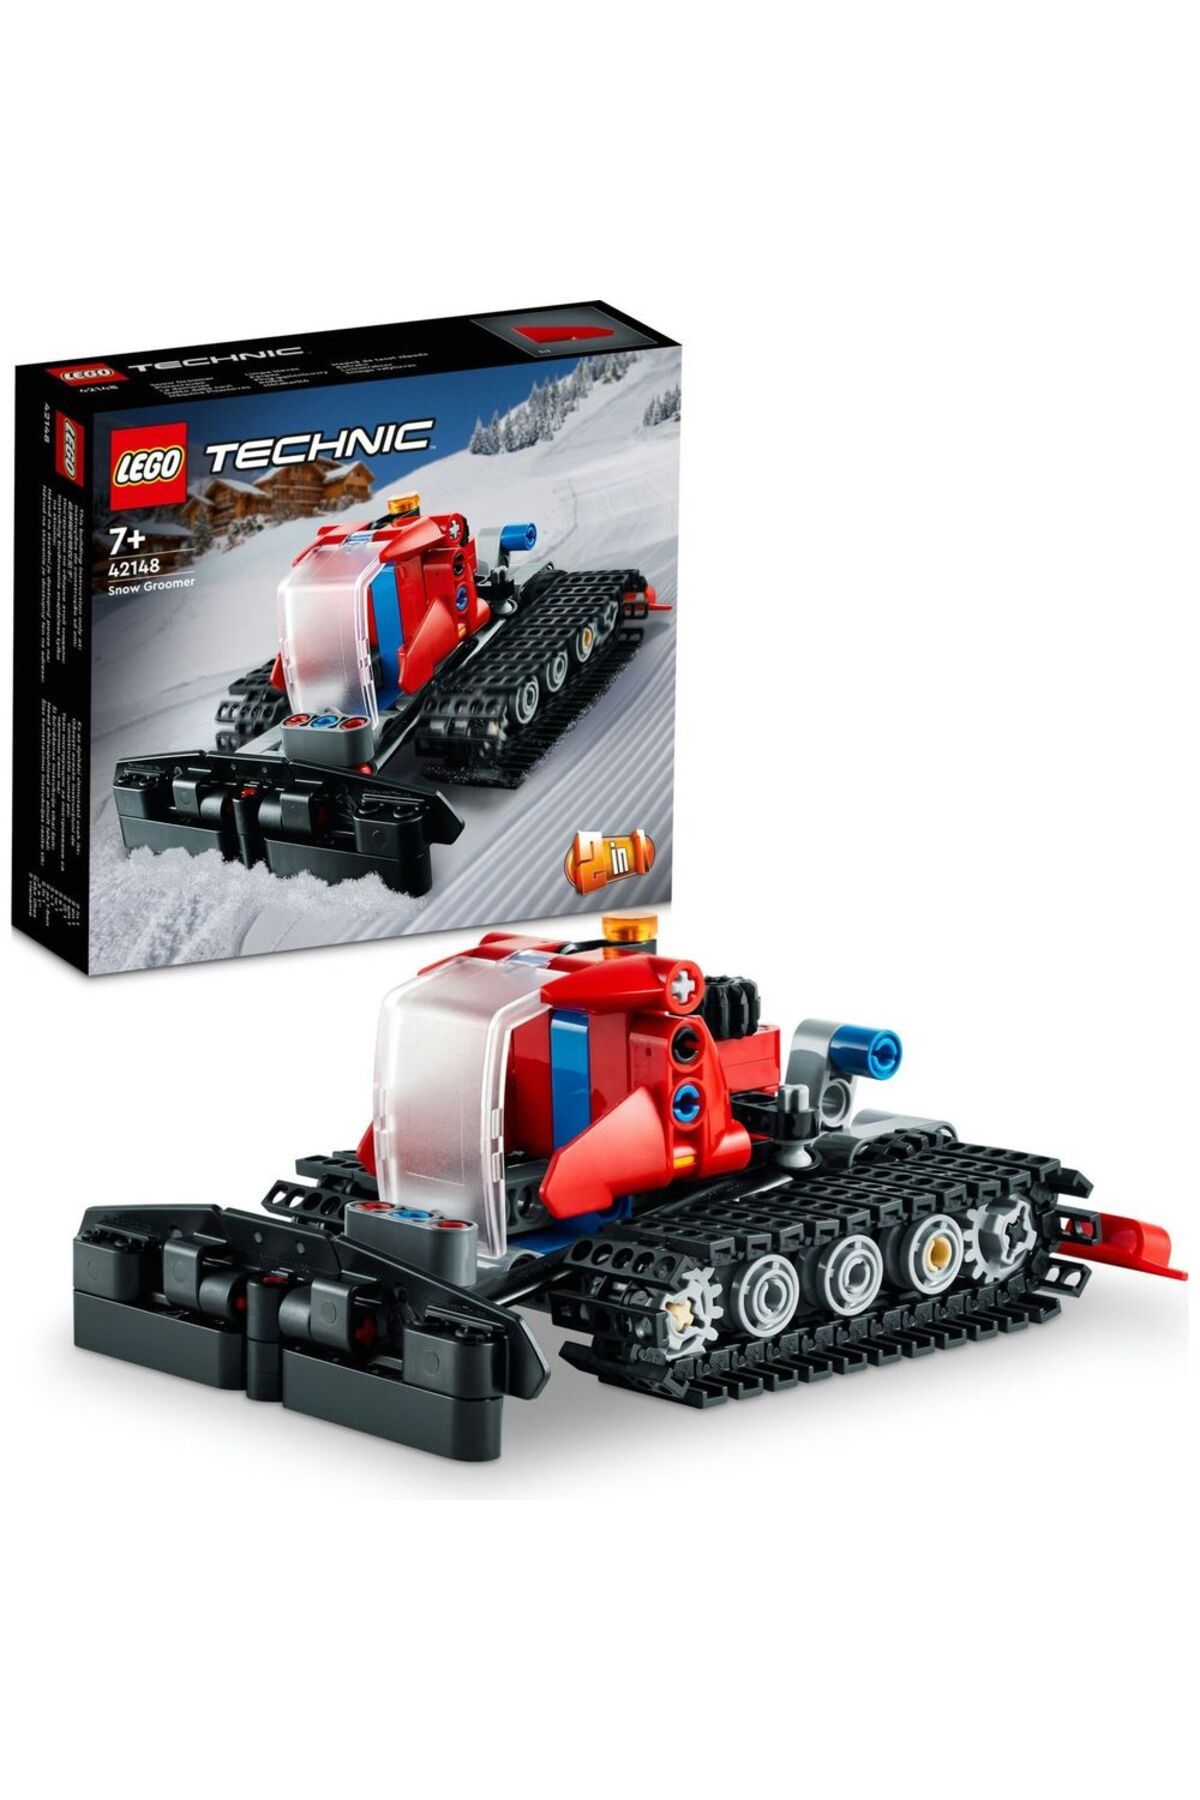 LEGO ® Technic Kar Ezme Aracı 42148 - 7 Yaş ve Üzeri Çocuklar için Oyuncak Yapım Seti (178 Parça)